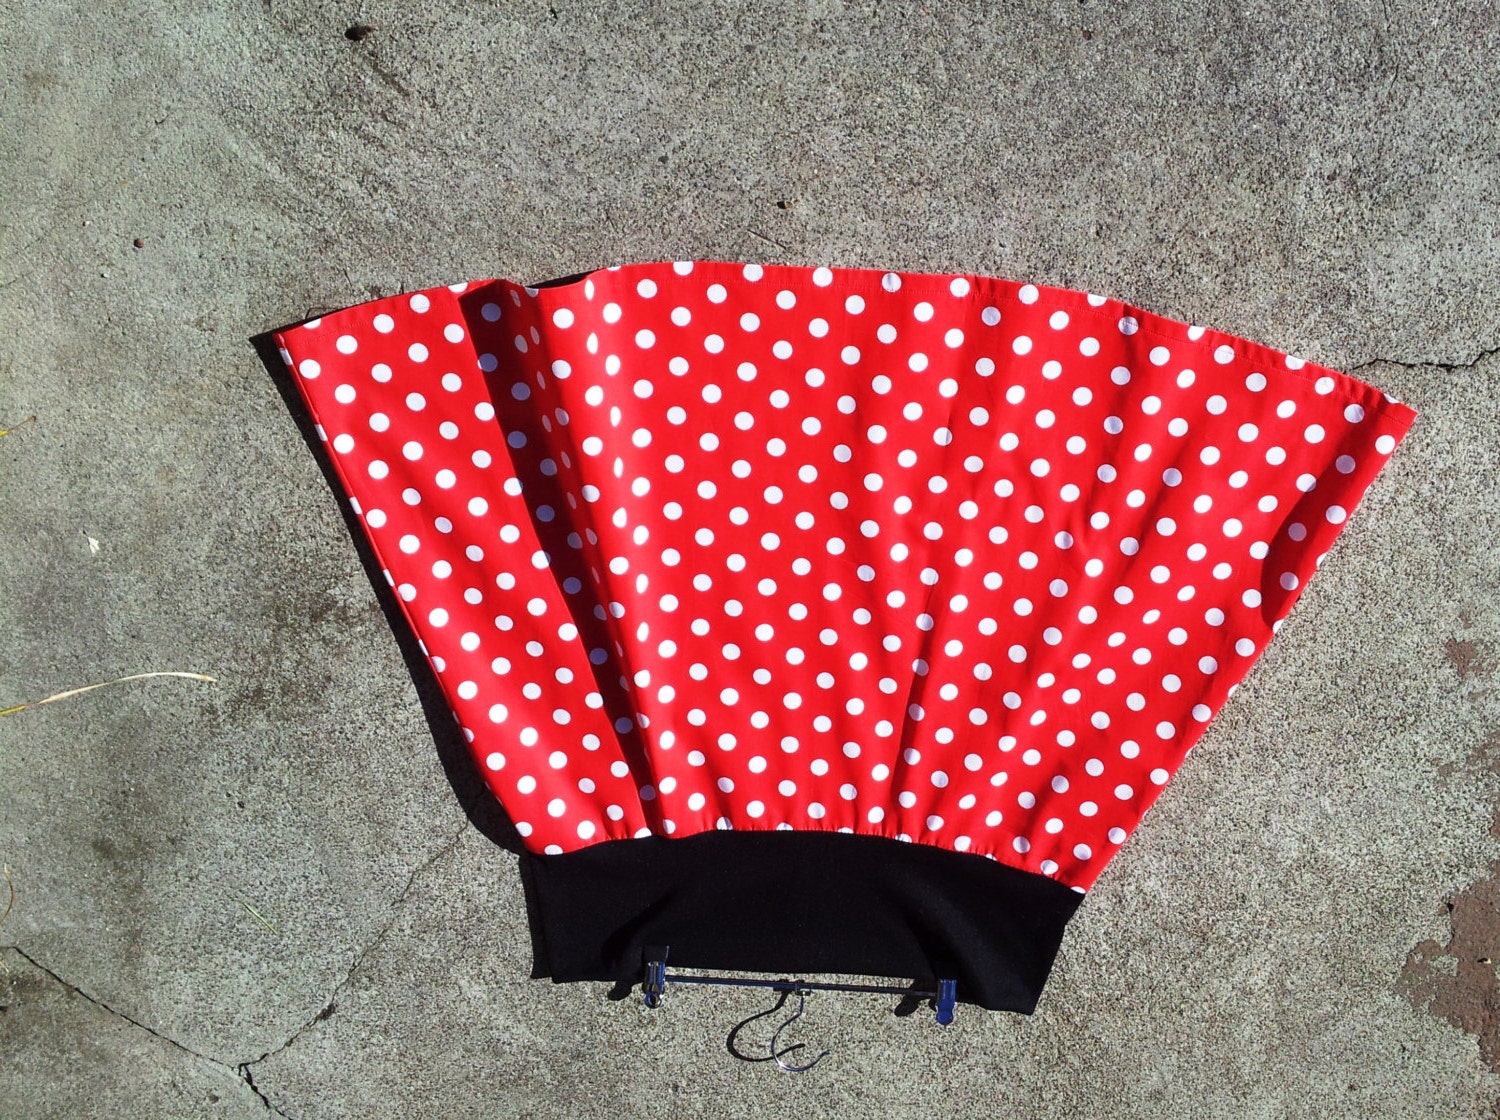 Women's skirt white polka dots on red cotton skirt